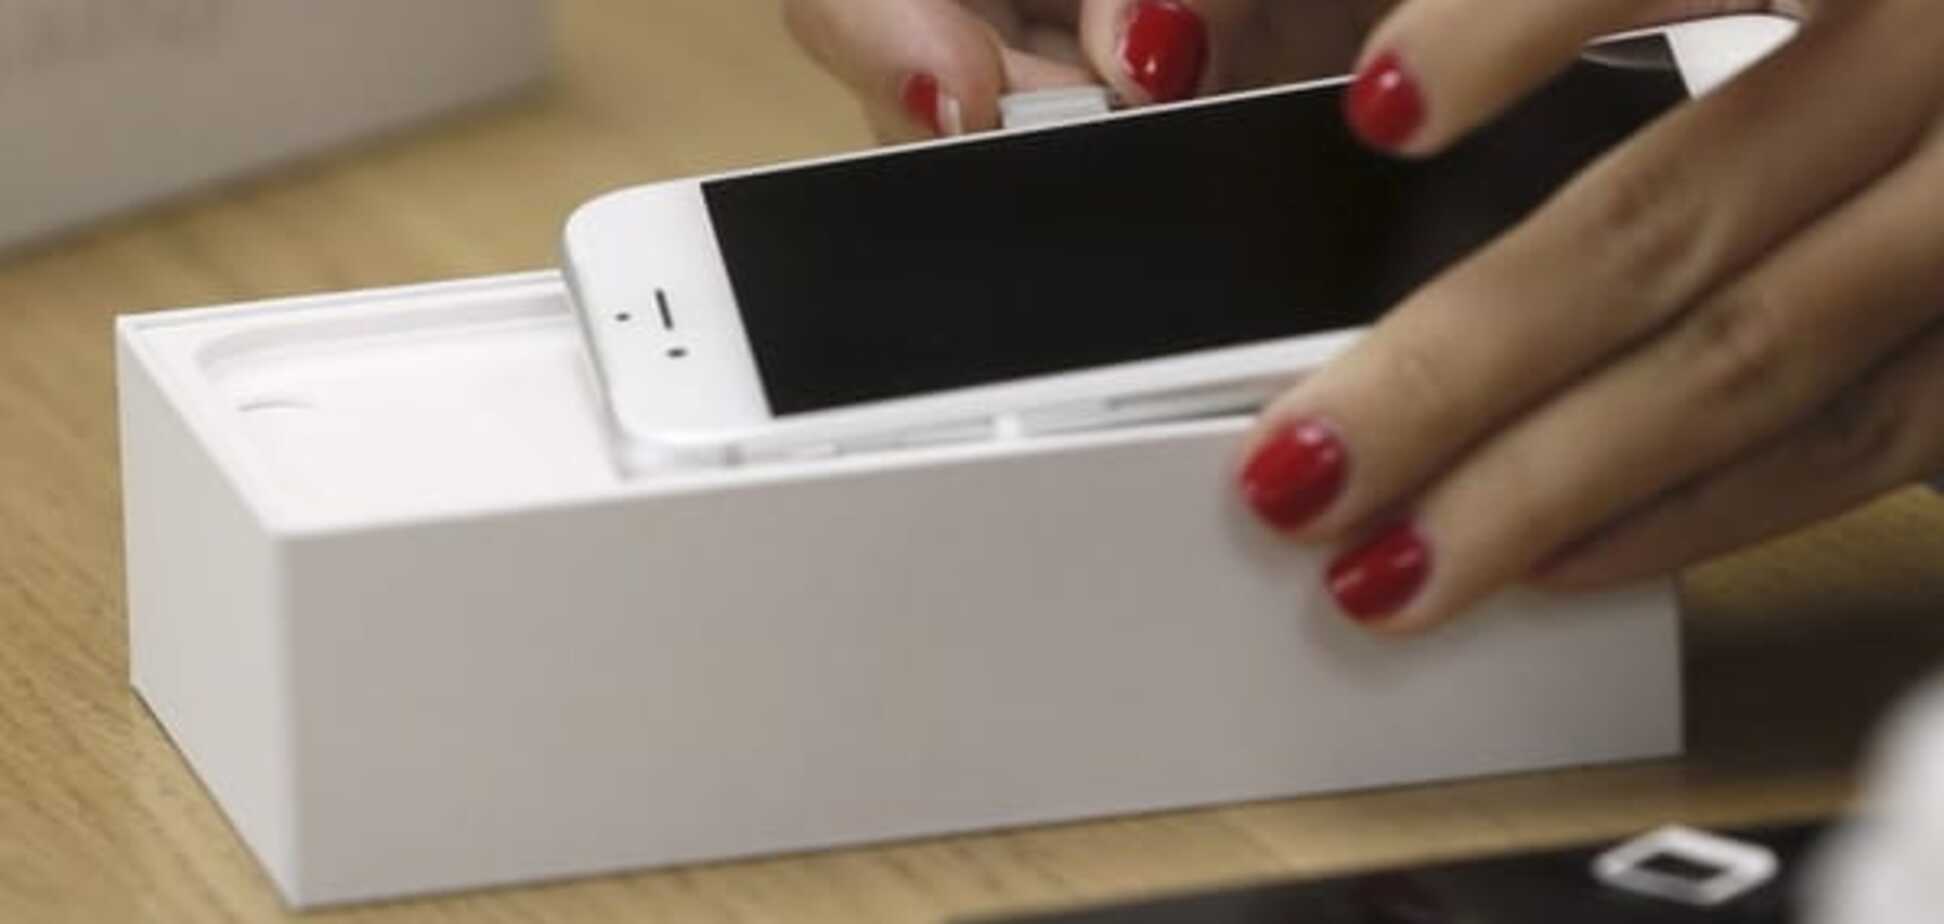 Apple в шоке: в сеть попали подробности нового iPhone 7